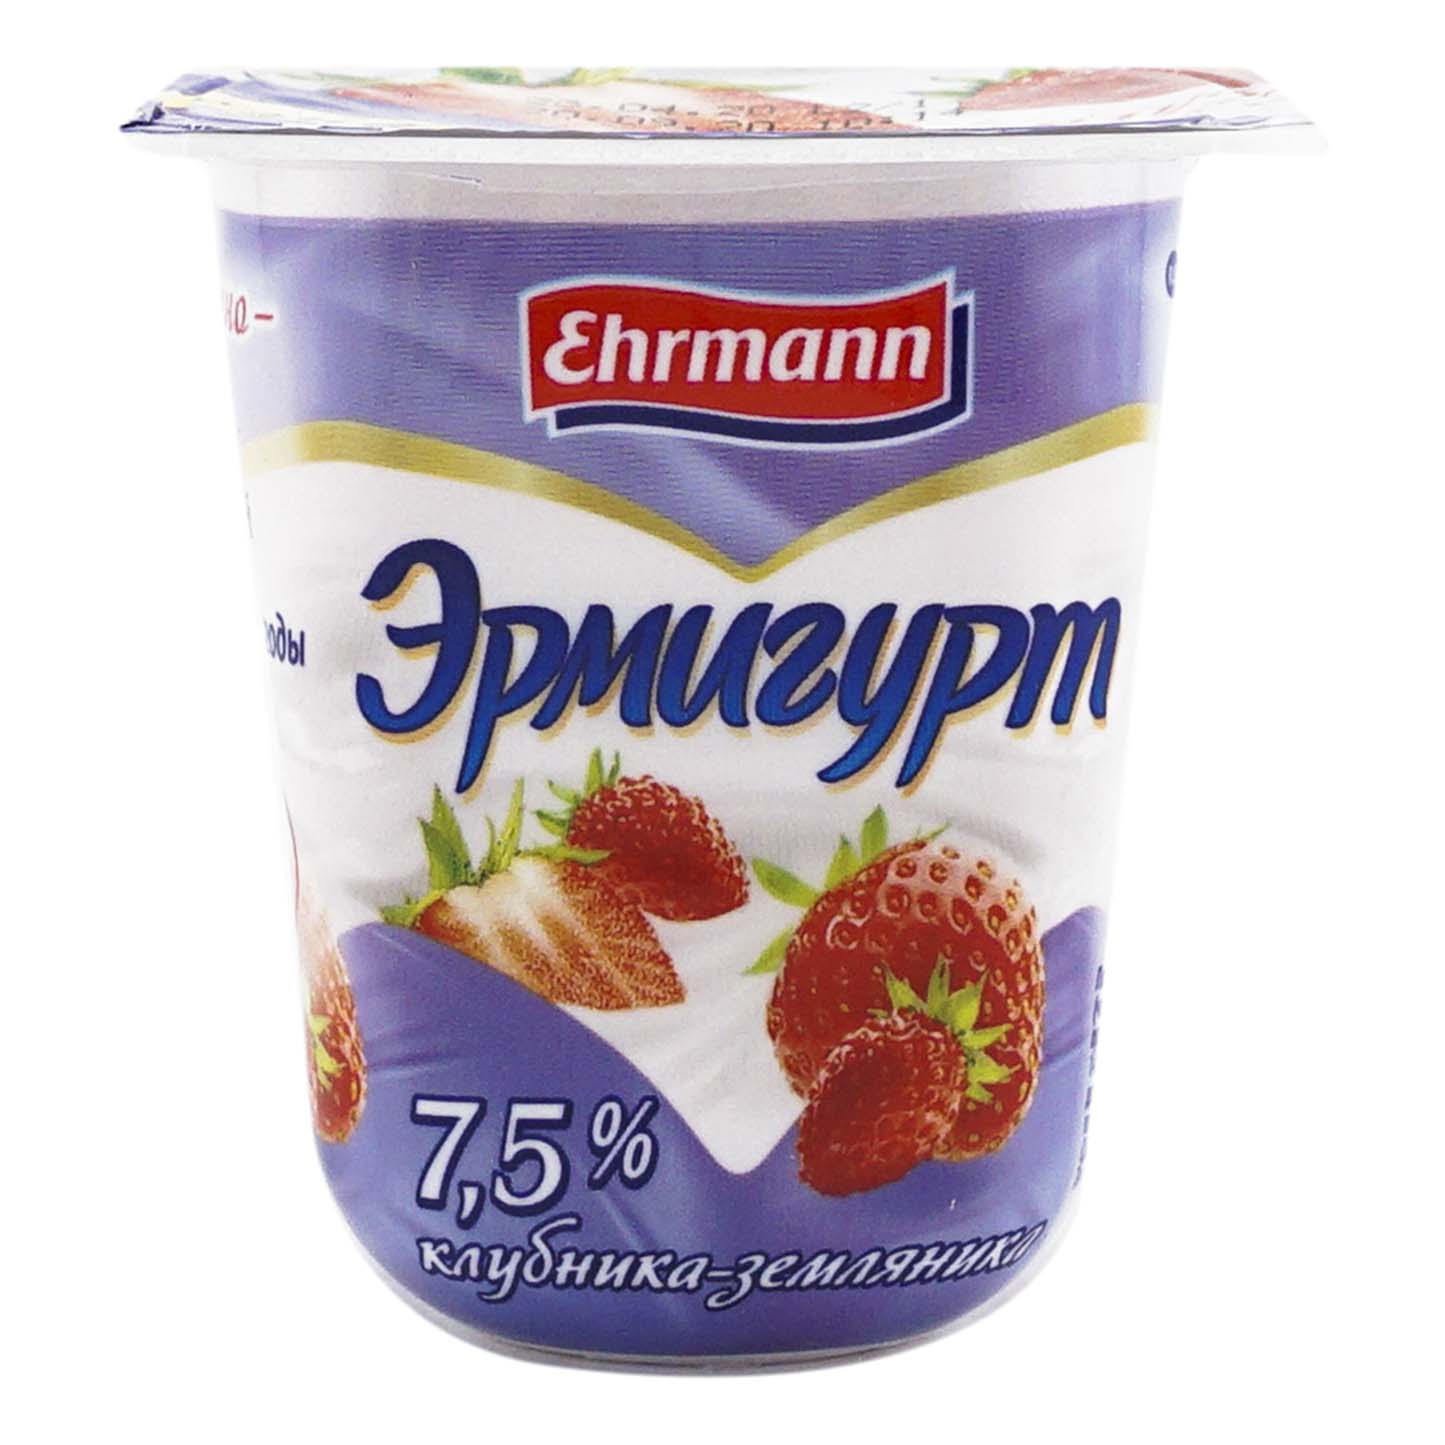 Йогуртный продукт Эрмигурт клубника-земляника 7,5% 115 г